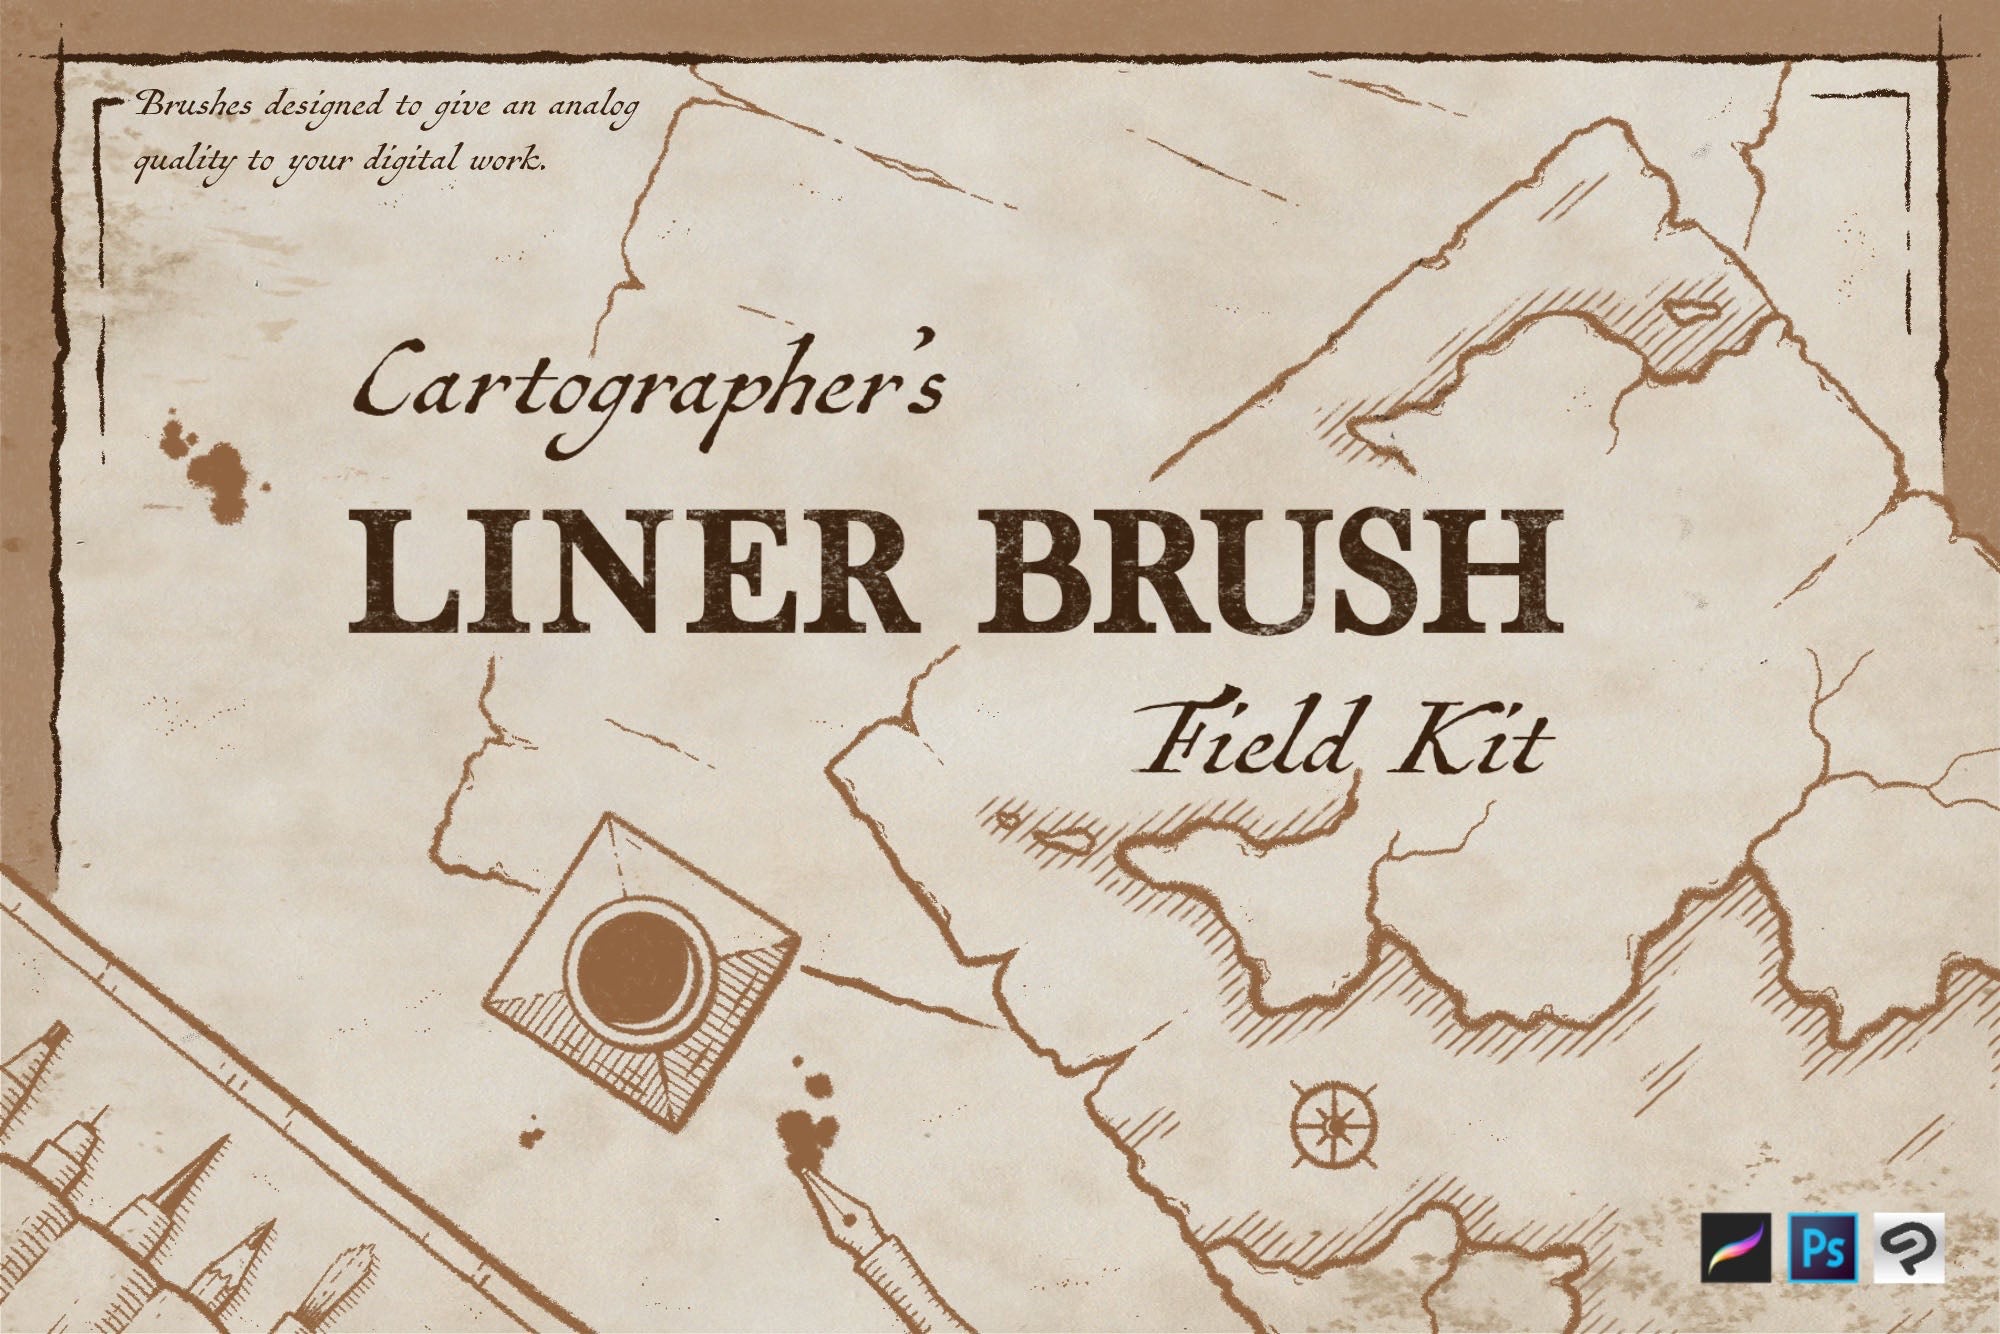 Cartographer's Liner Brush Field Kit